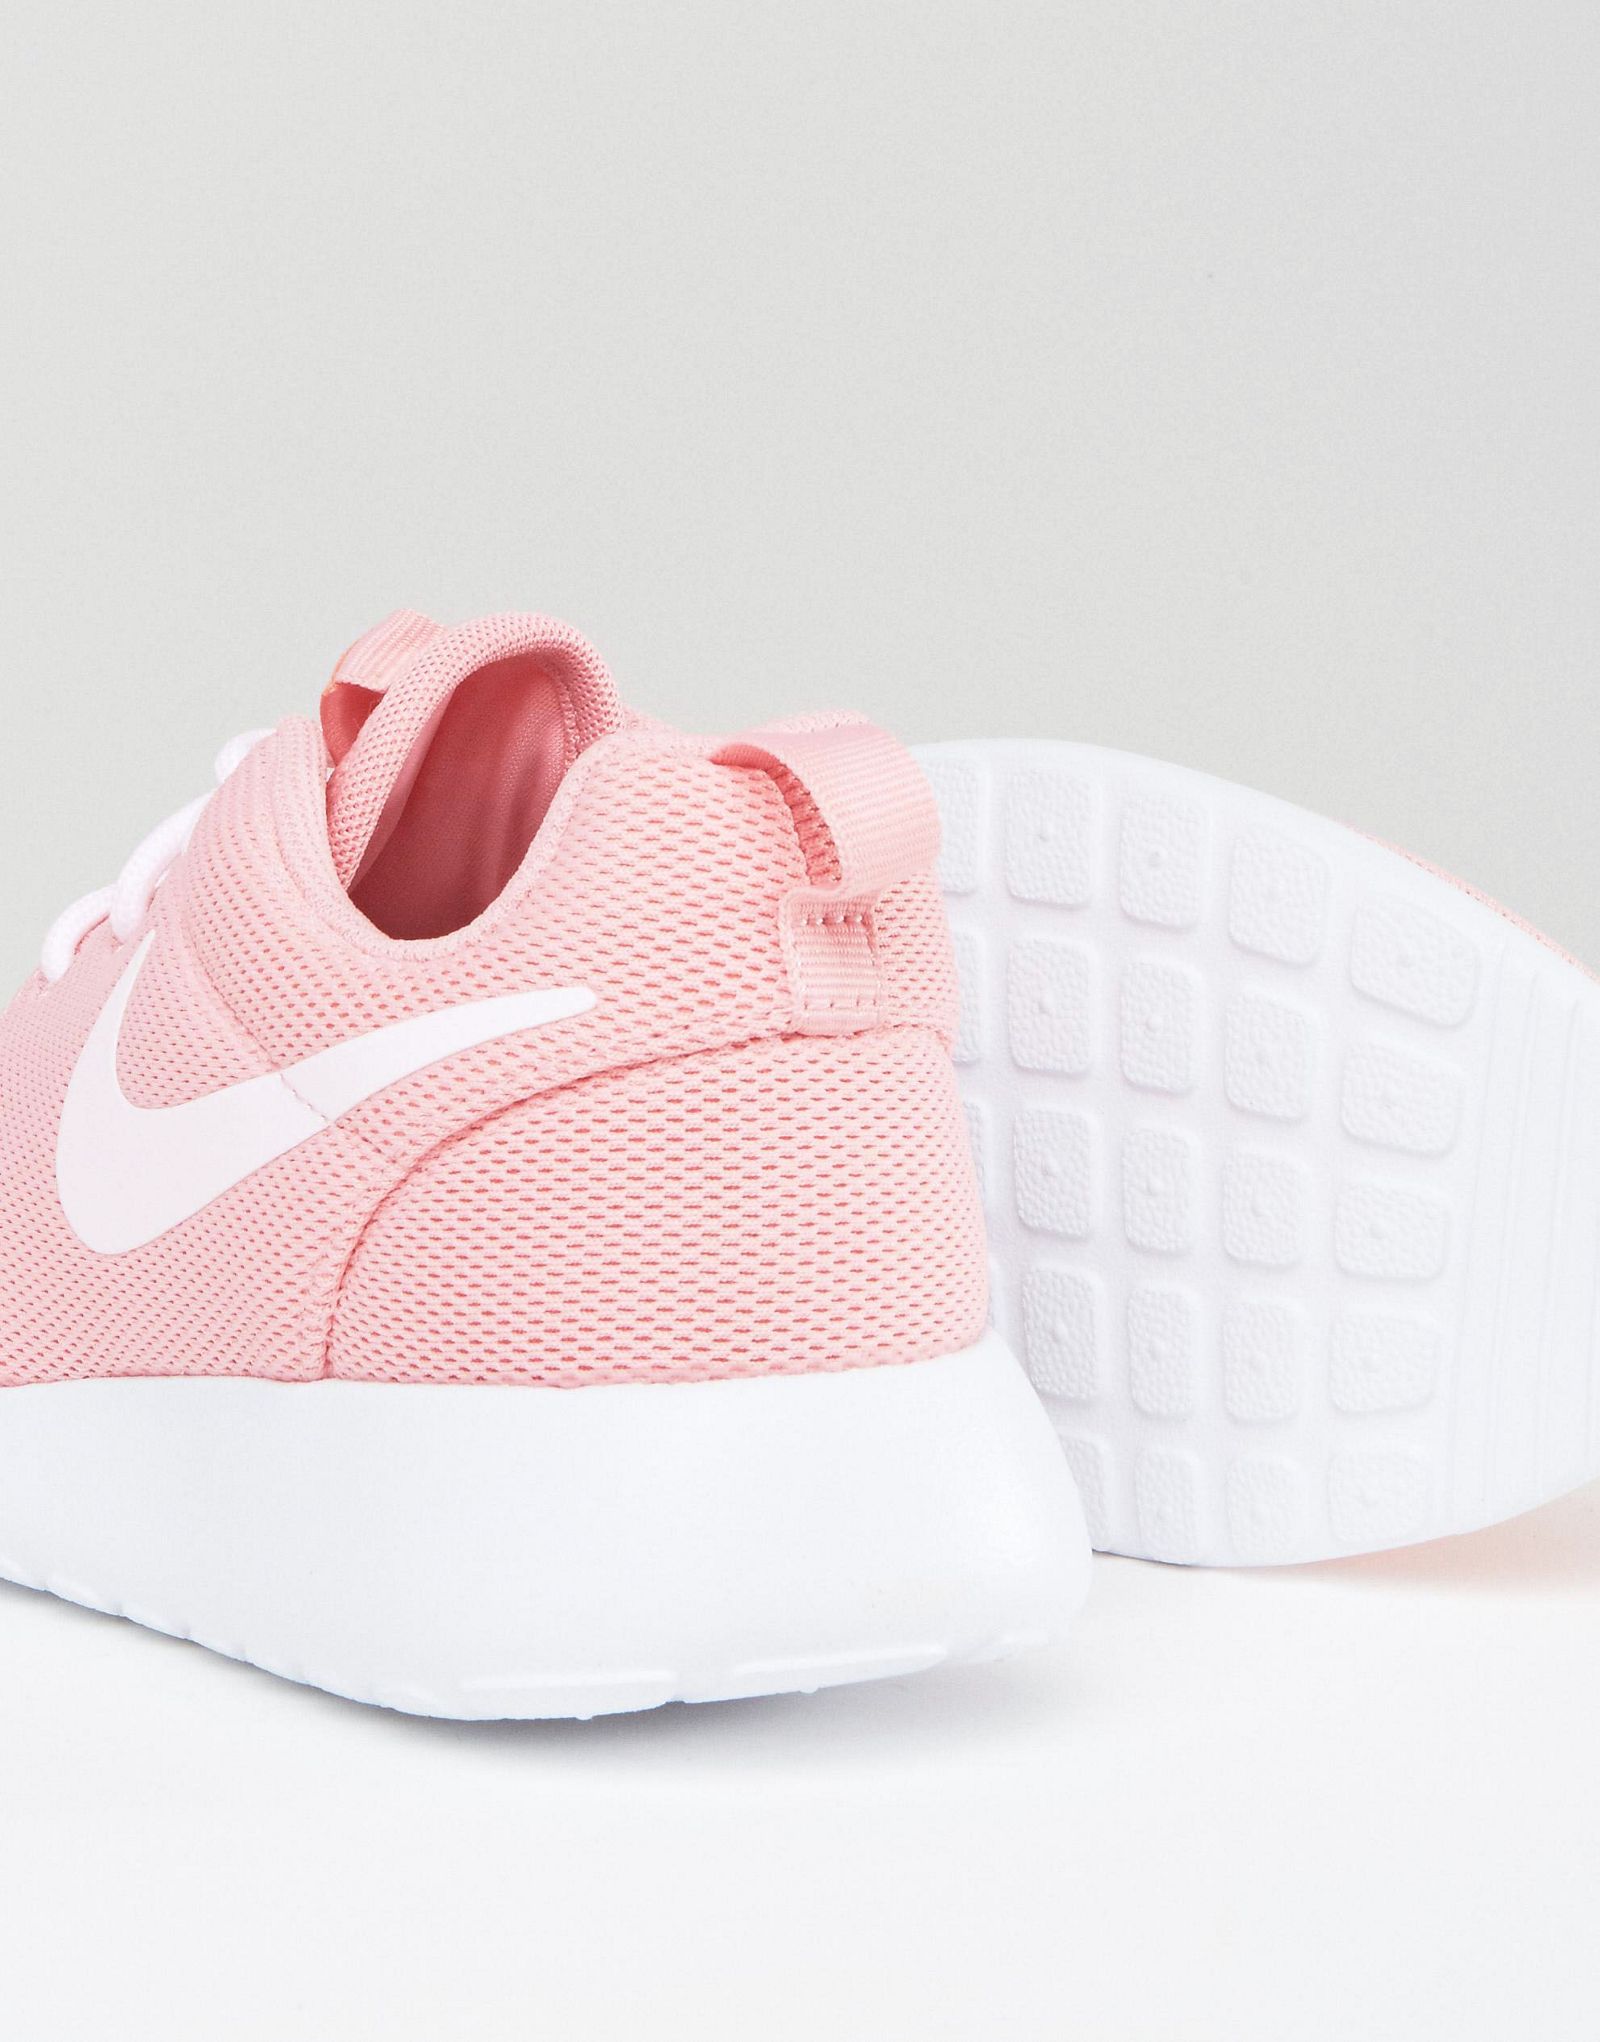 Nike Roshe One Sneakers In Pink